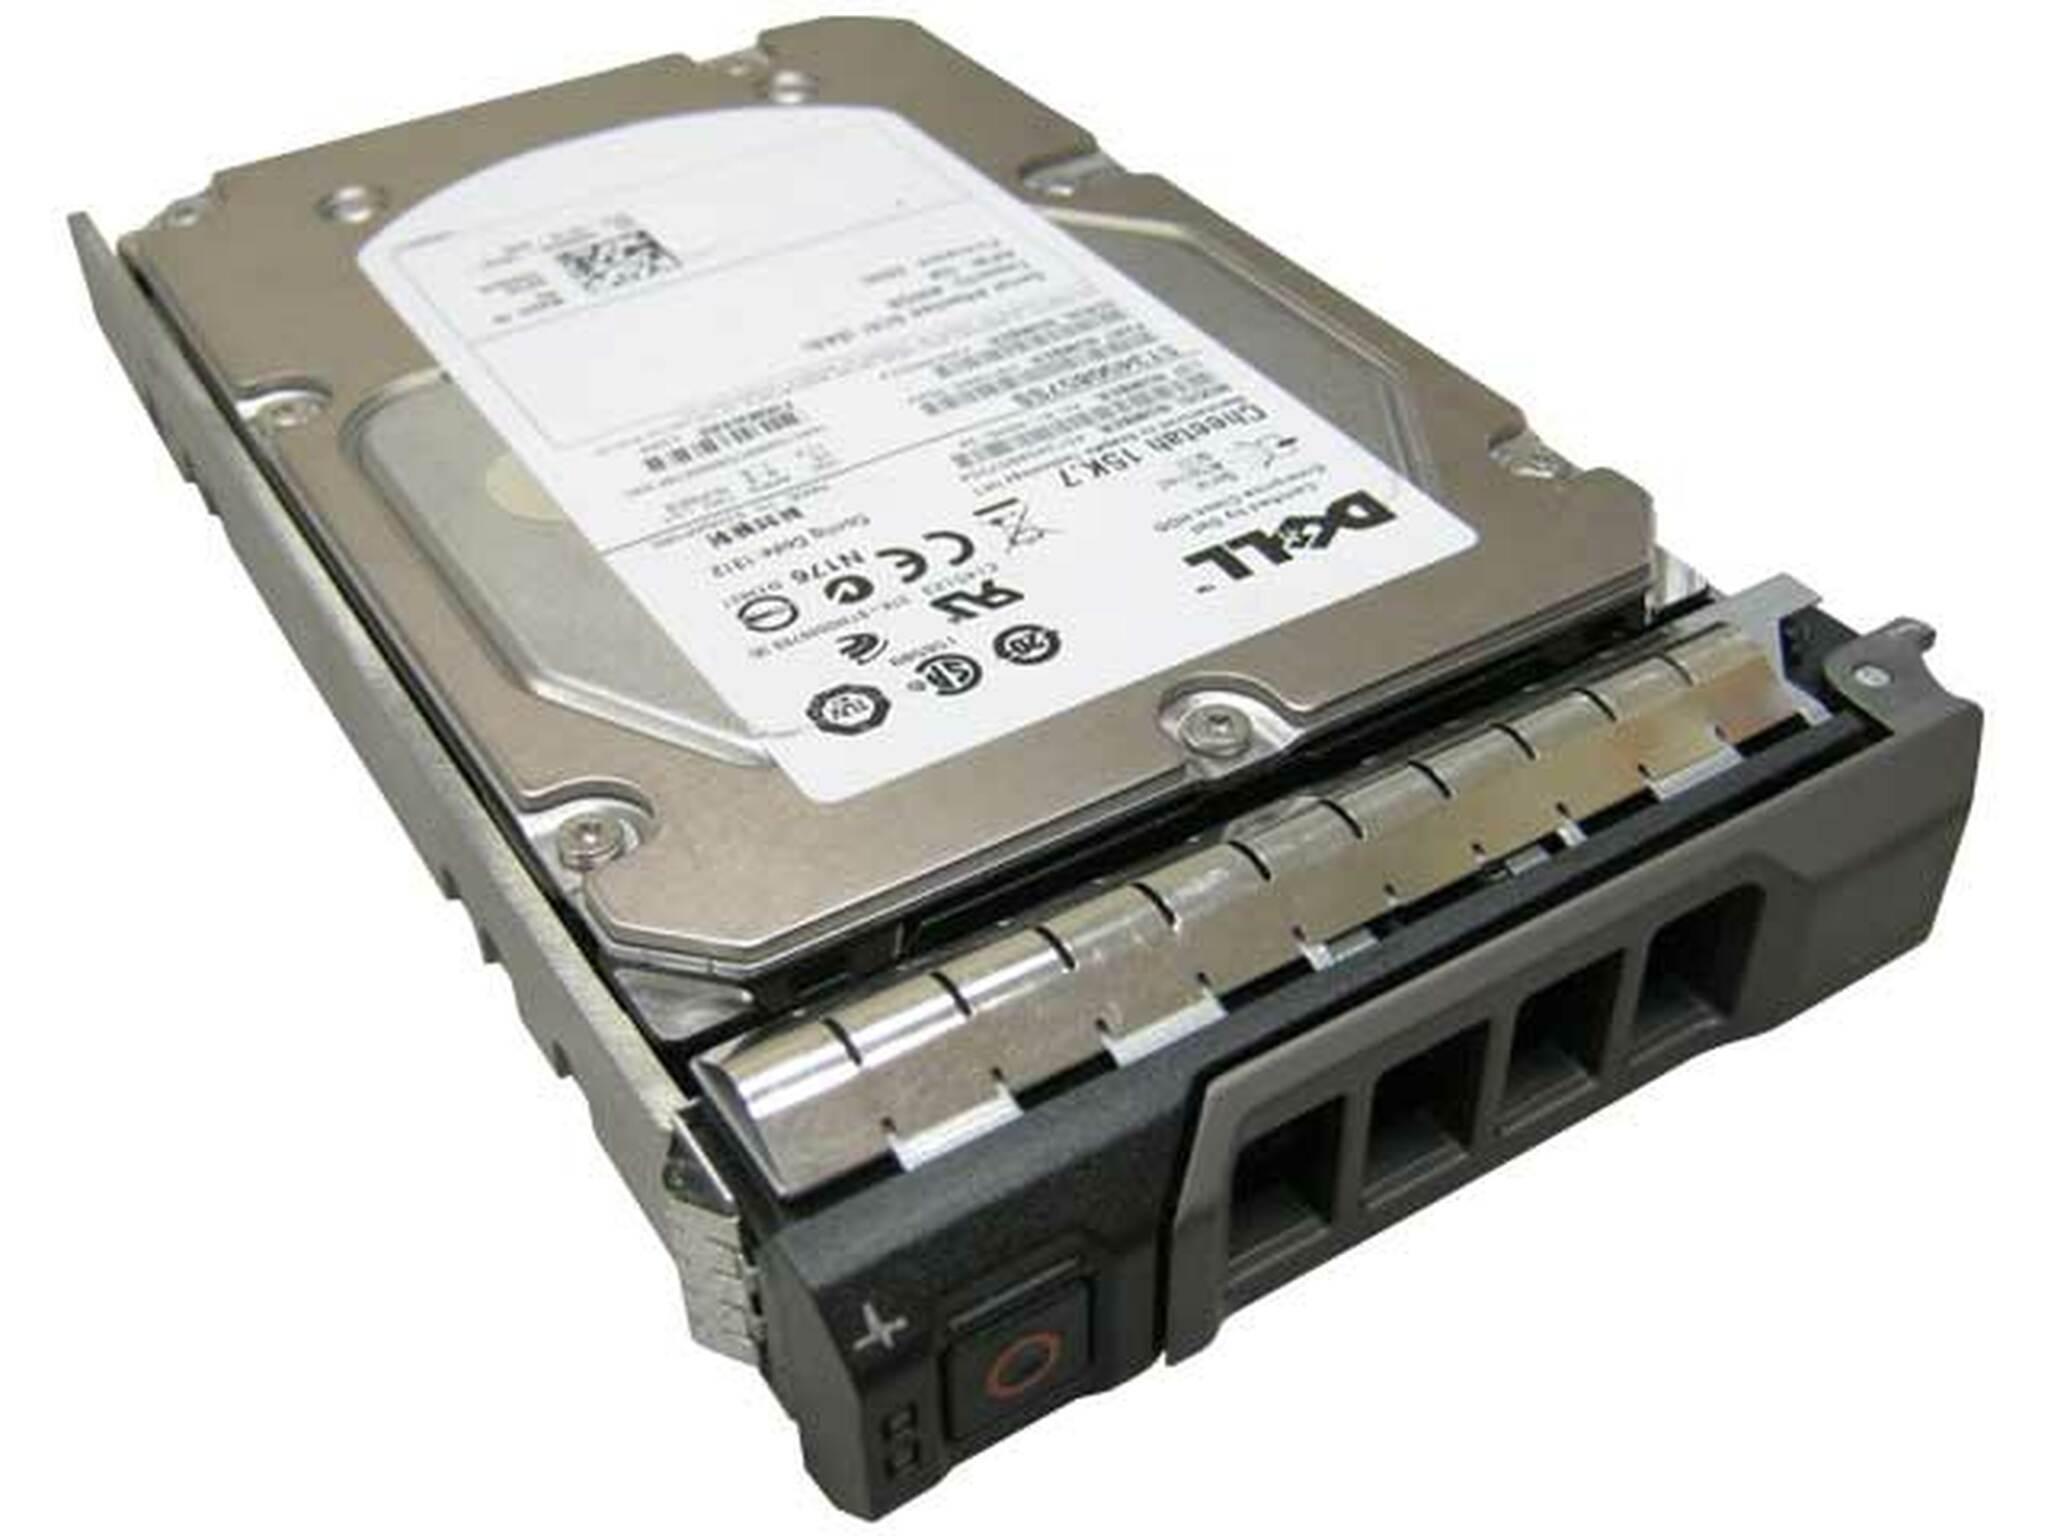 Dell XX517 450GB 15k rpm SAS 3Gbps 3.5" Hard Drive